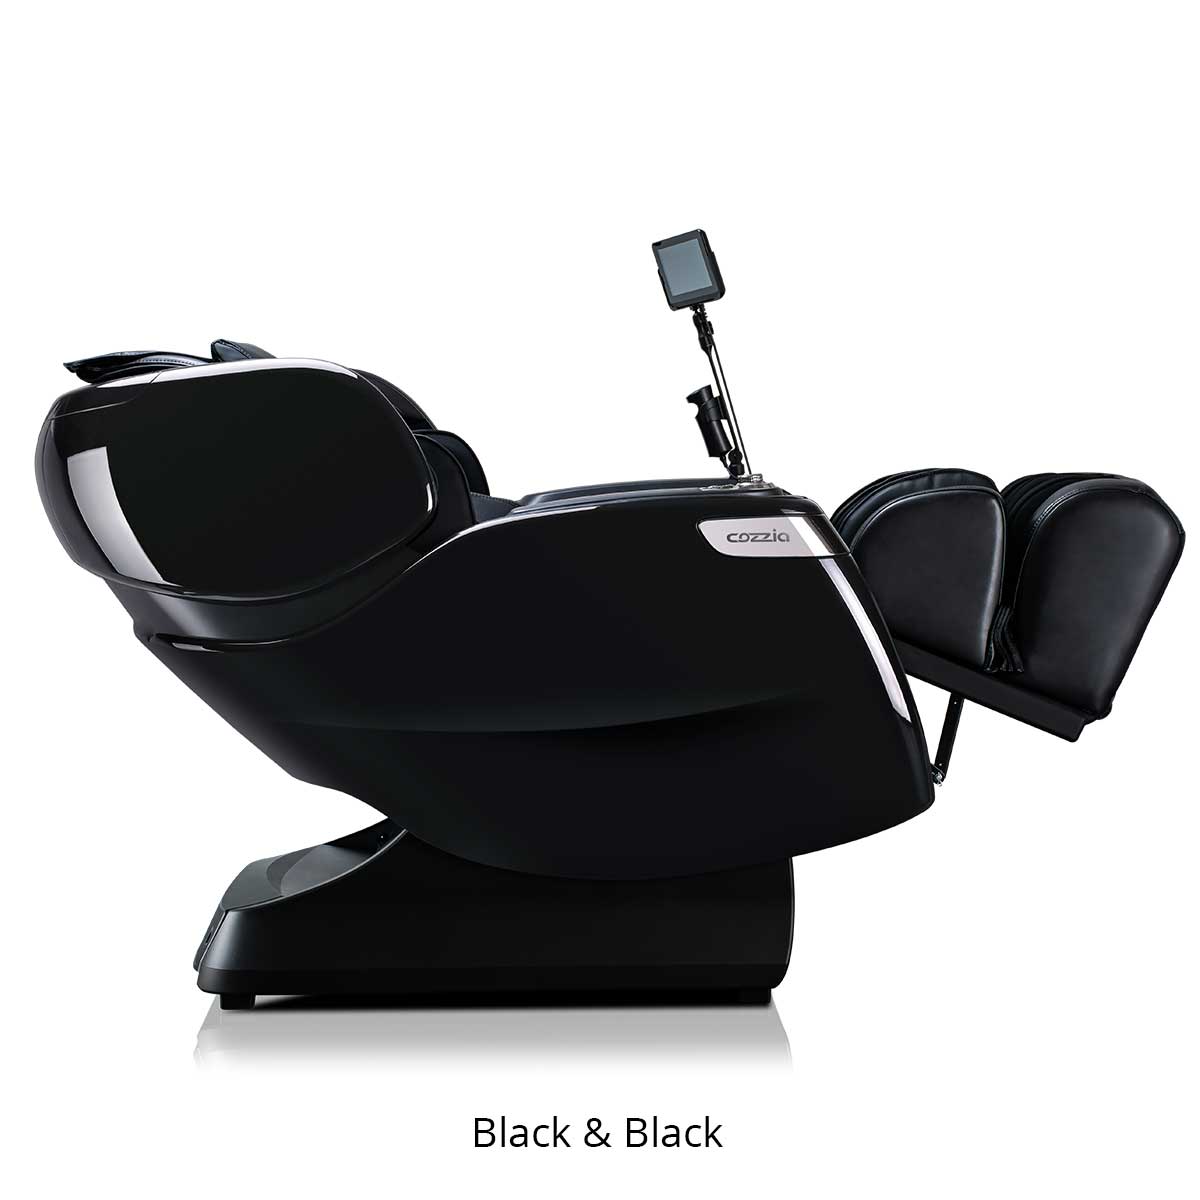 Cozzia Qi XE Pro Massage Chair